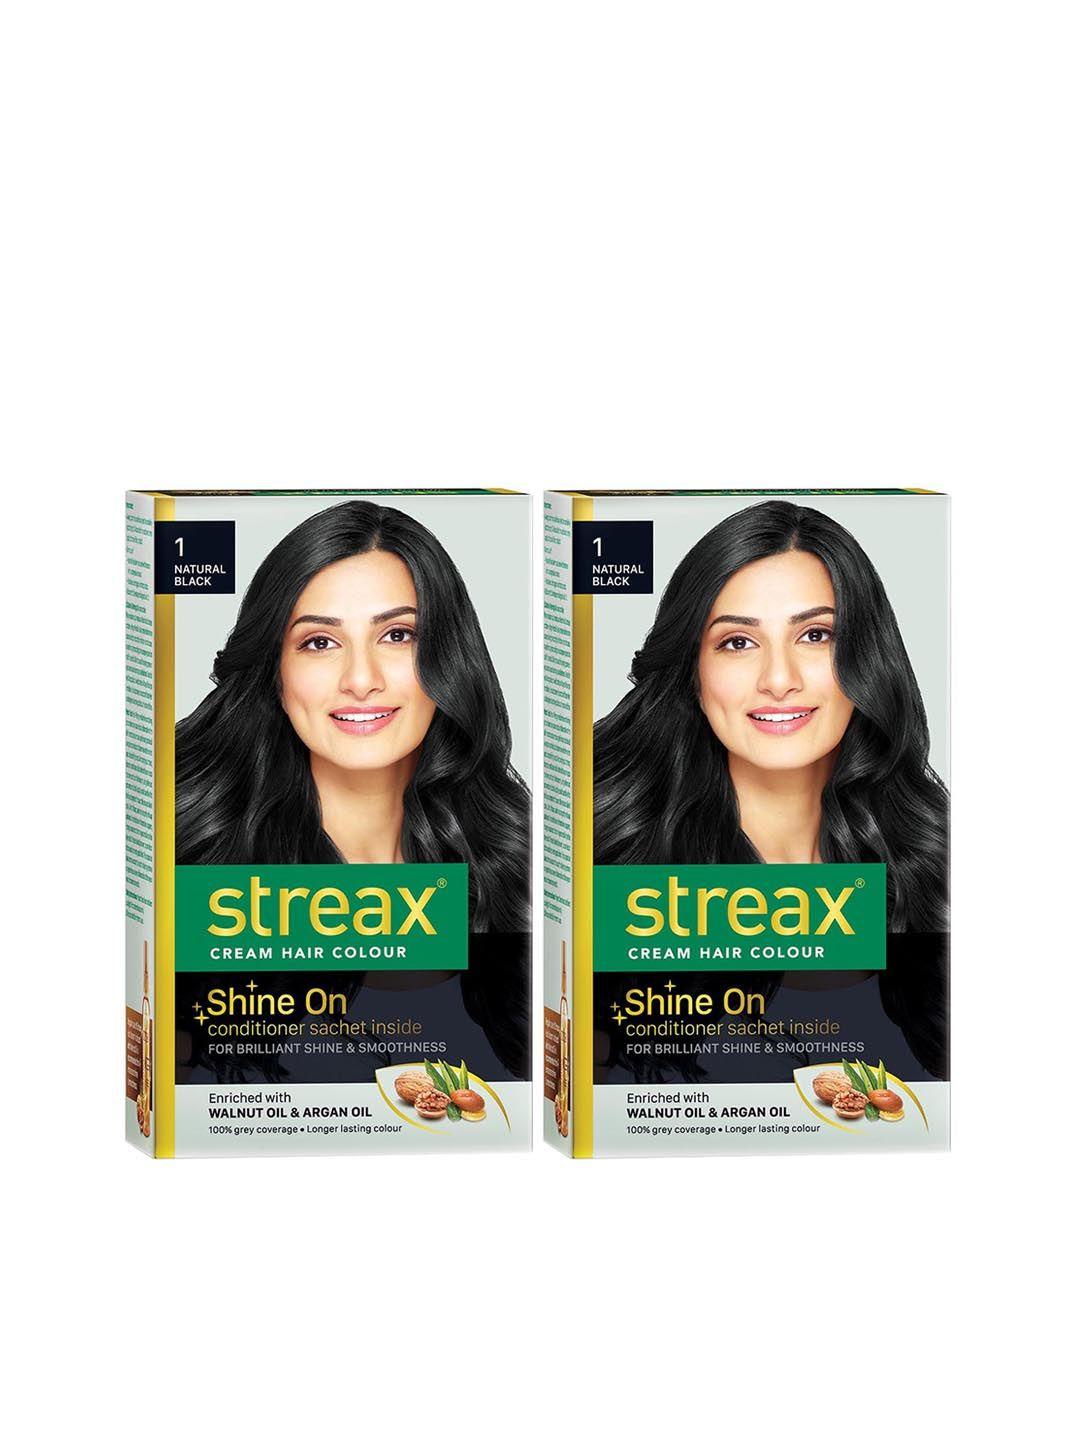 streax set of 2 cream hair colours - 1 natural black 120 ml each